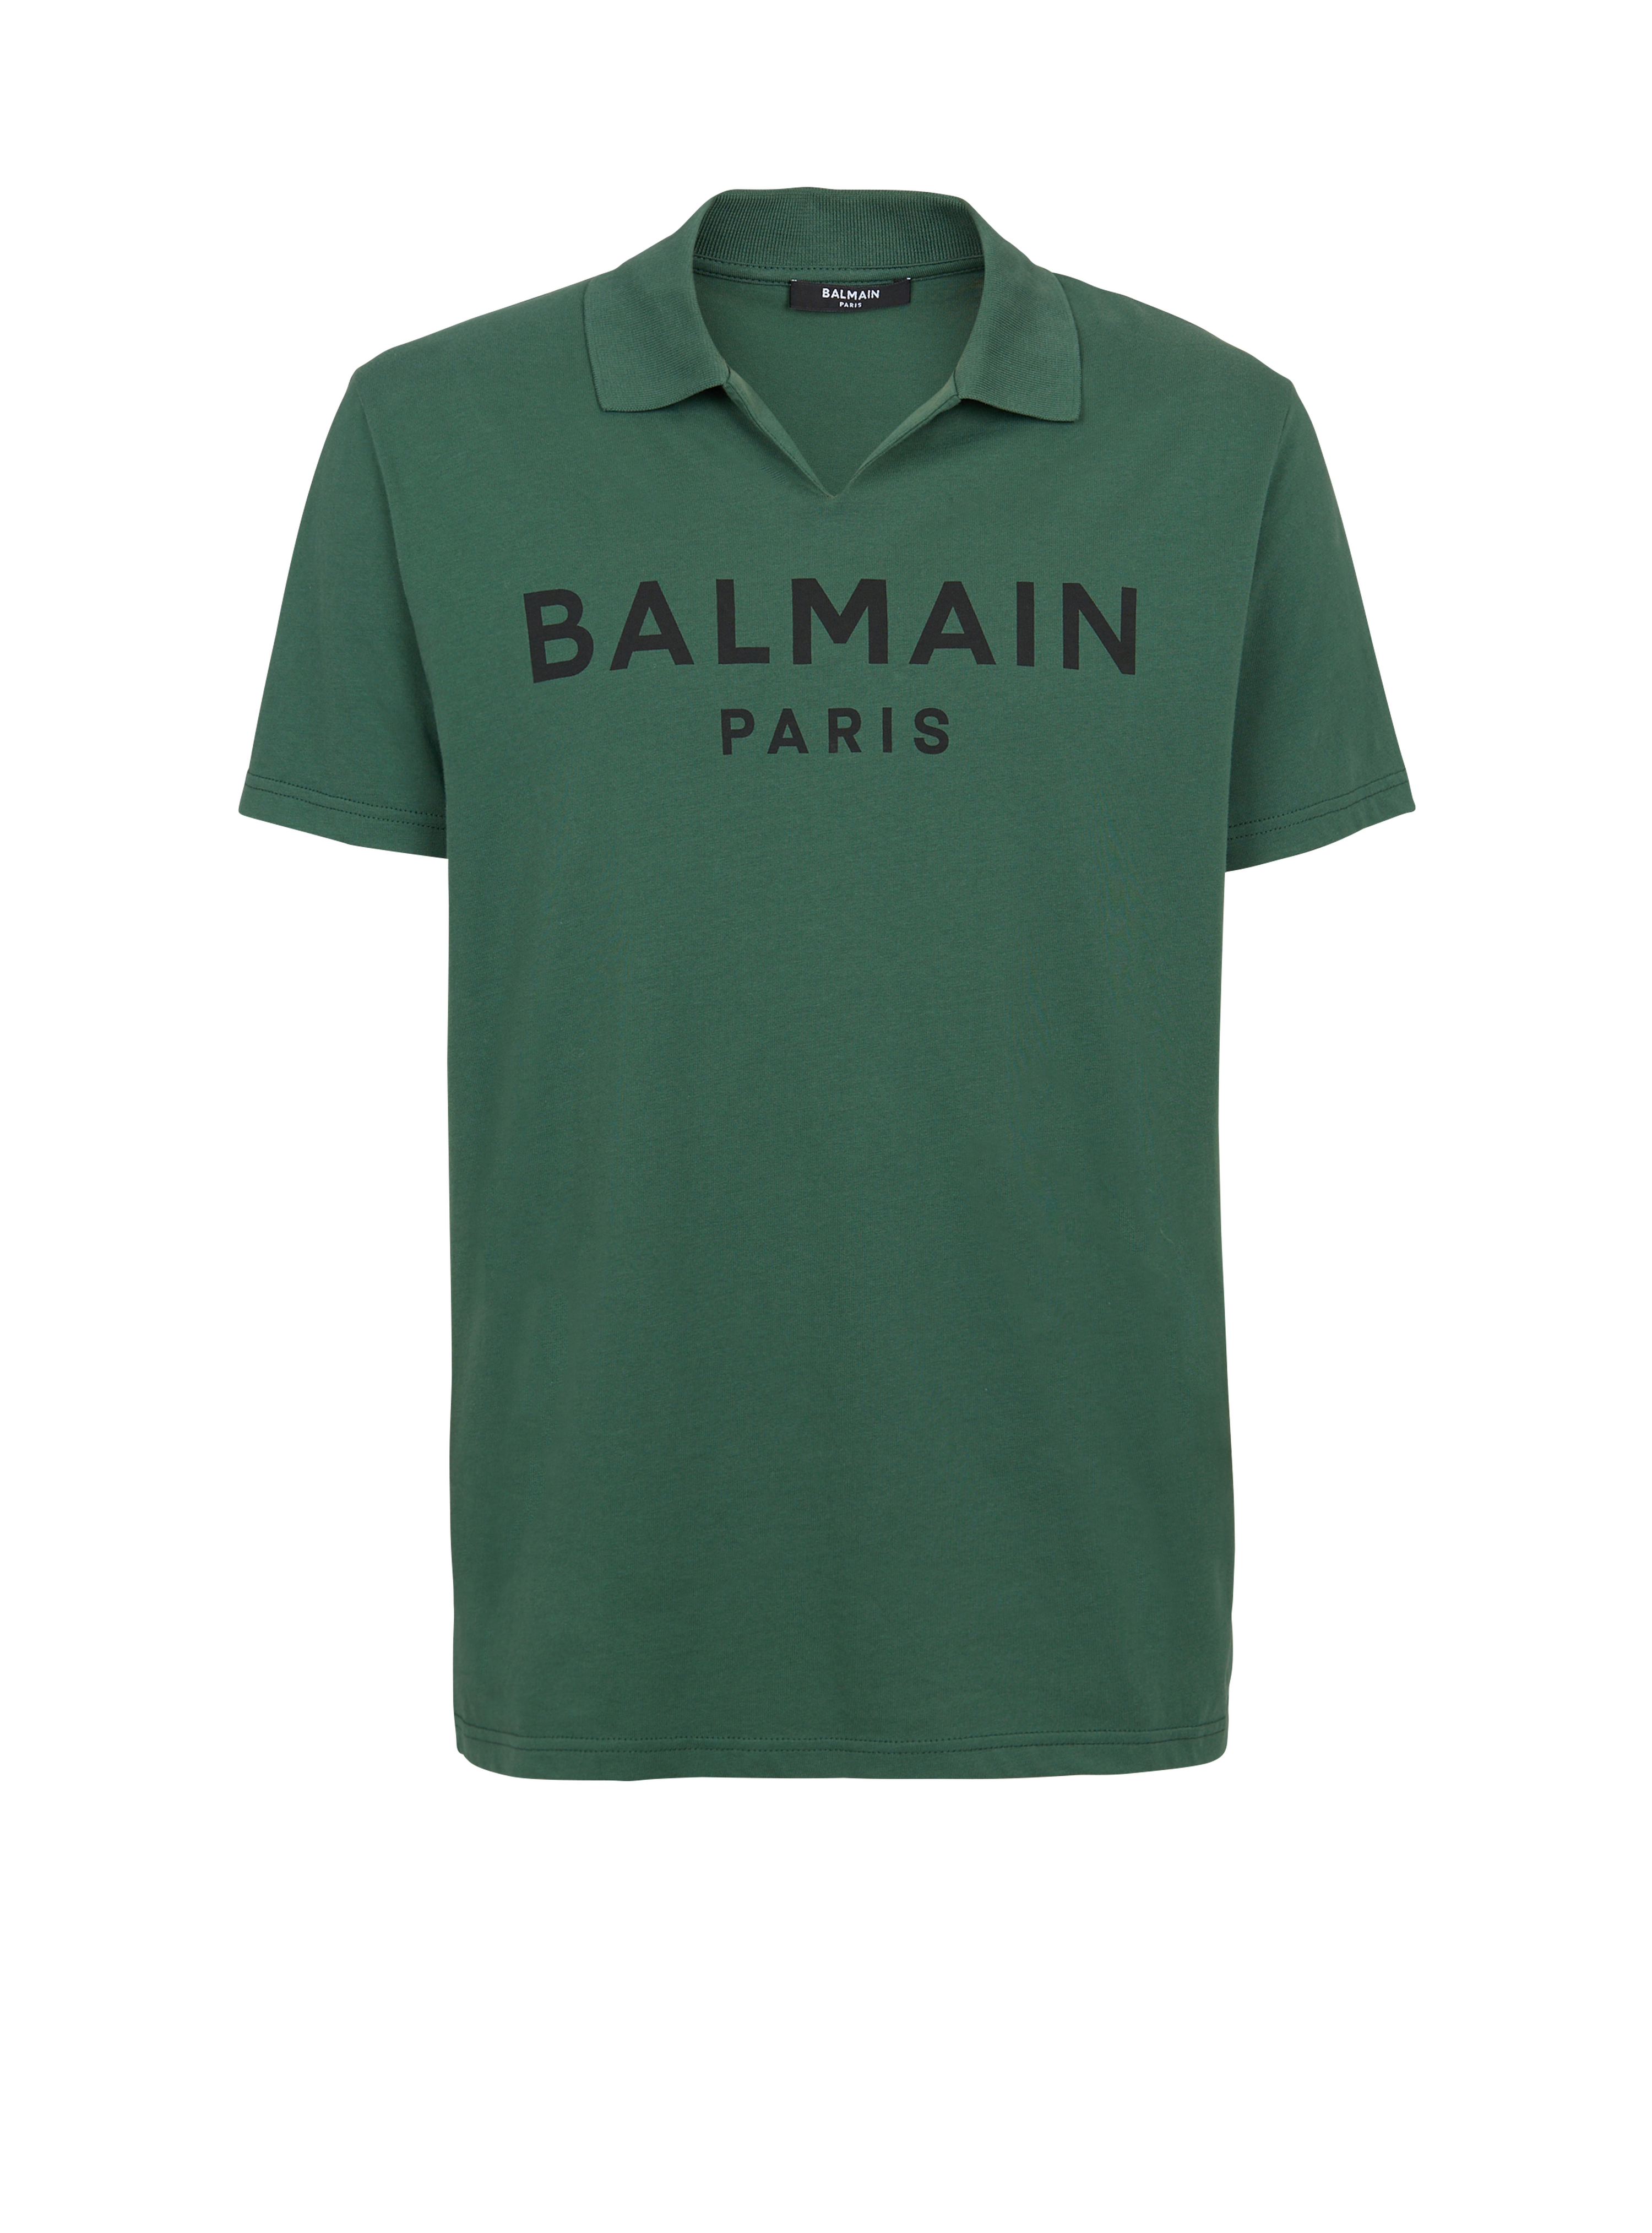 Polo in cotone con logo Balmain nero, verde